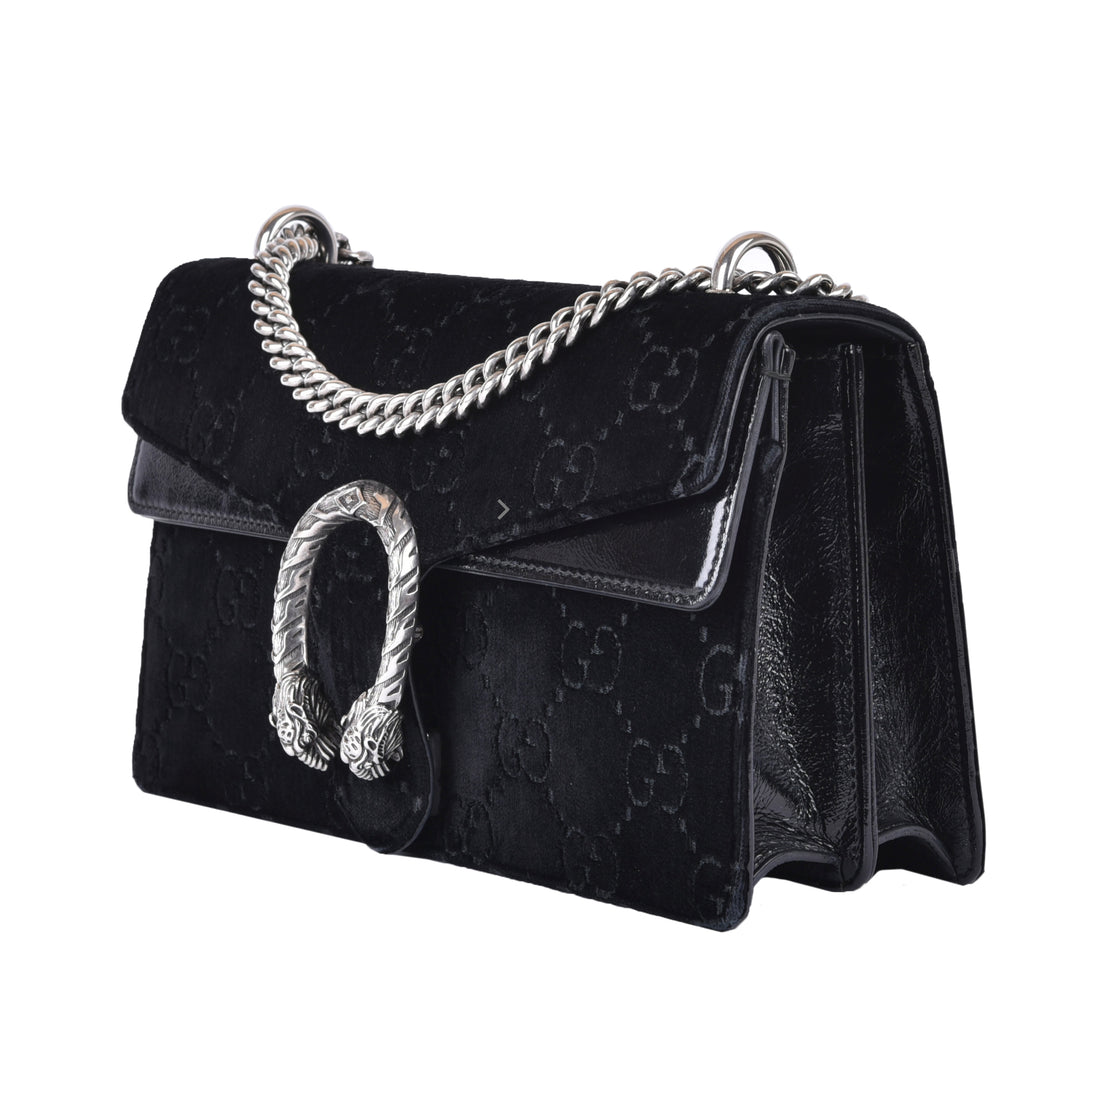 Gucci Dionysus GG Shoulder Bag